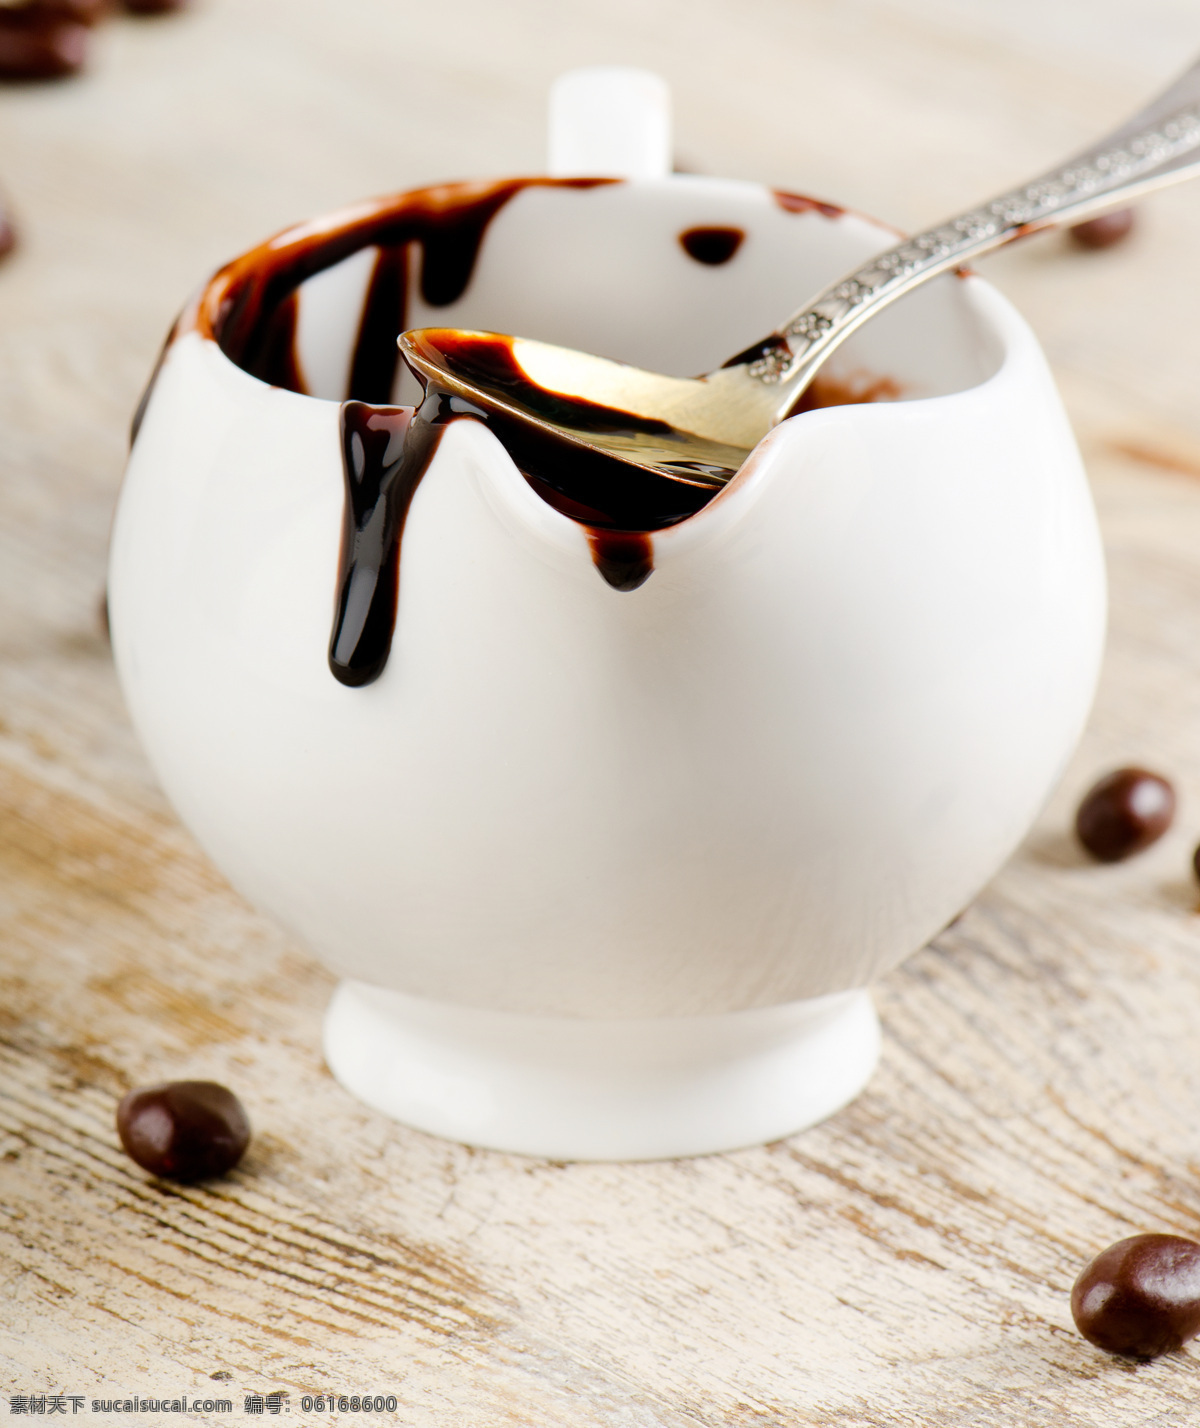 杯子 里 巧克力 汁 牛奶巧克力 甜品 点心 食物原料 食材原料 餐饮美食 美食图片